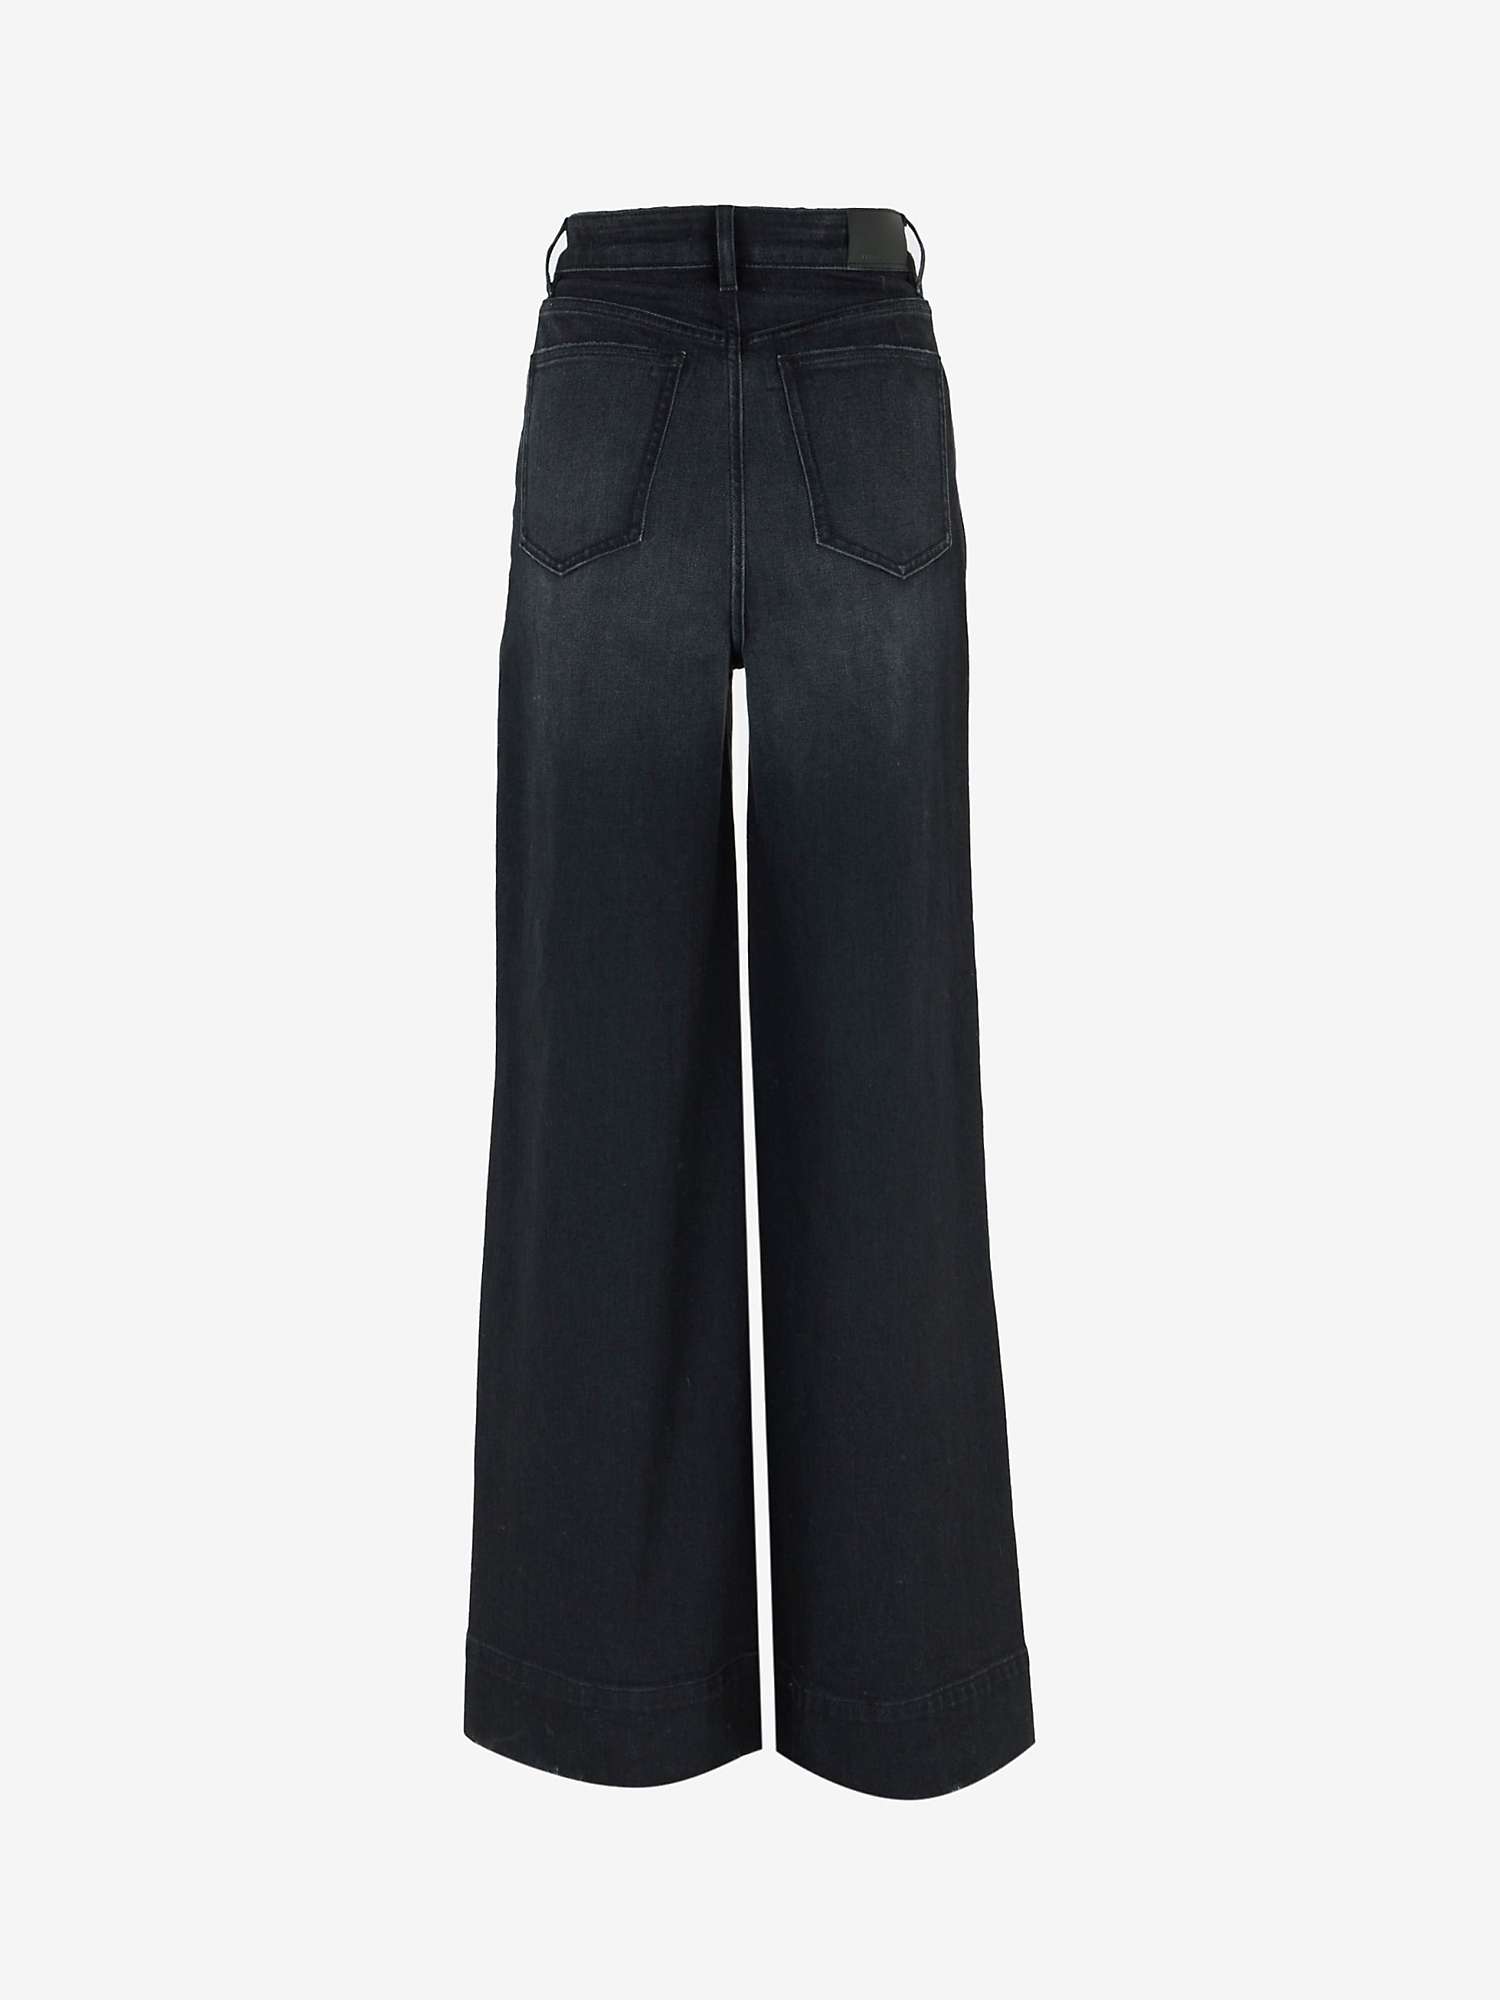 Buy Mint Velvet Super Soft Wide Leg Jeans, Black Online at johnlewis.com